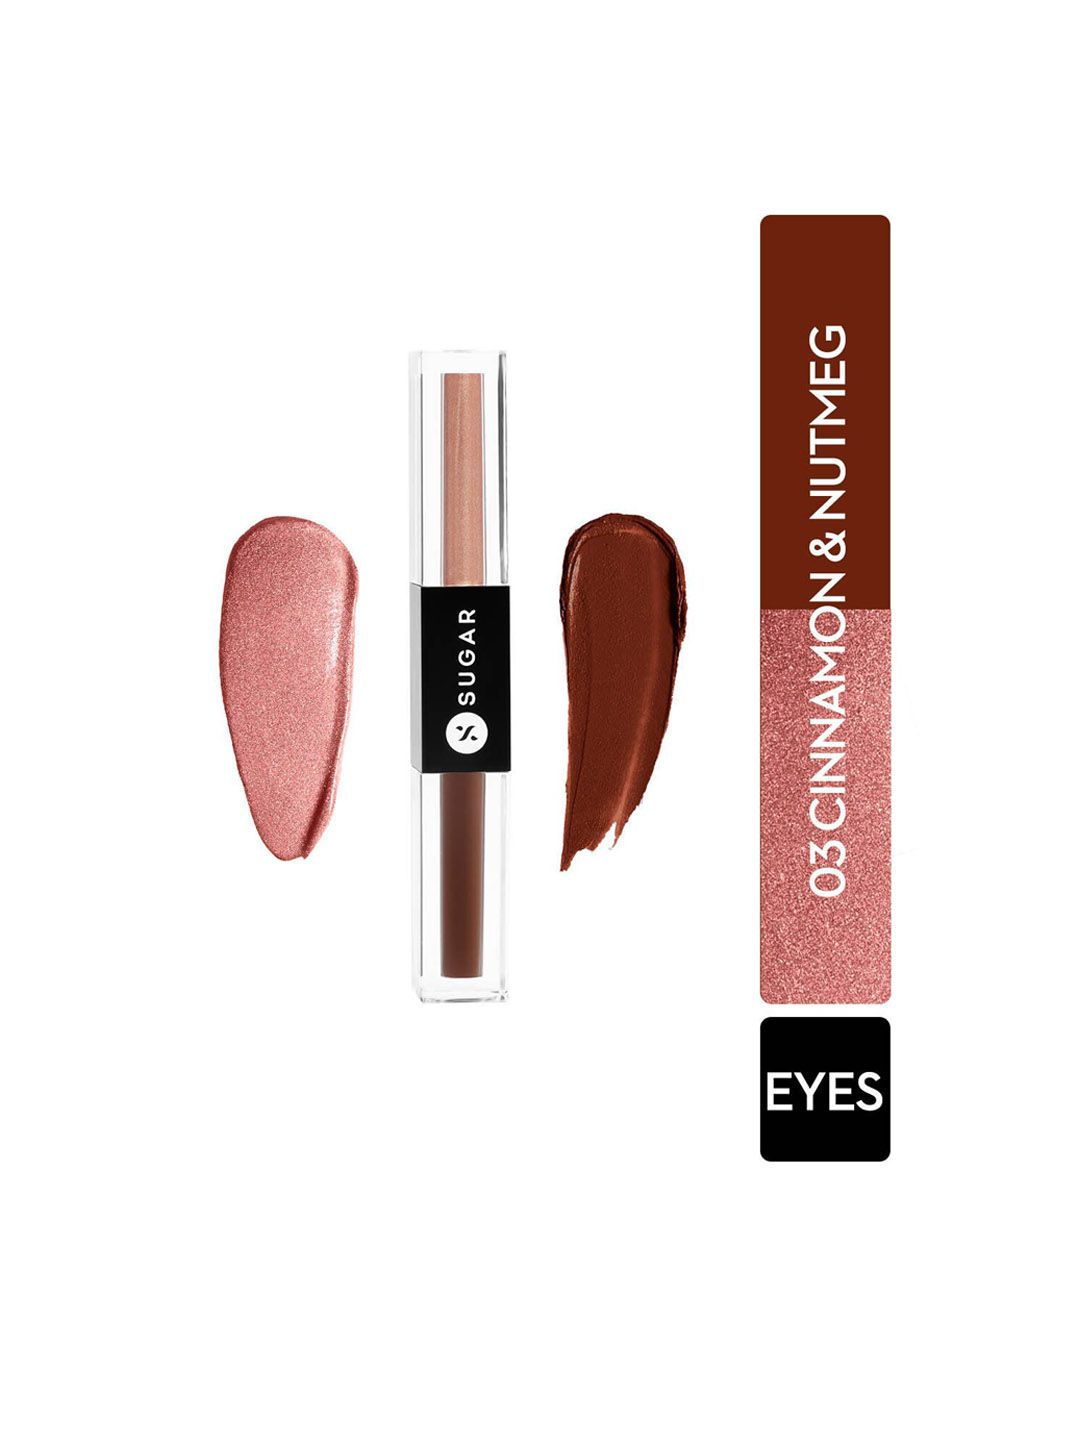 SUGAR Two Good To Be True Dual Eyeshadow 1.5ml Each Side - 03 Cinnamon & Nutmeg Price in India